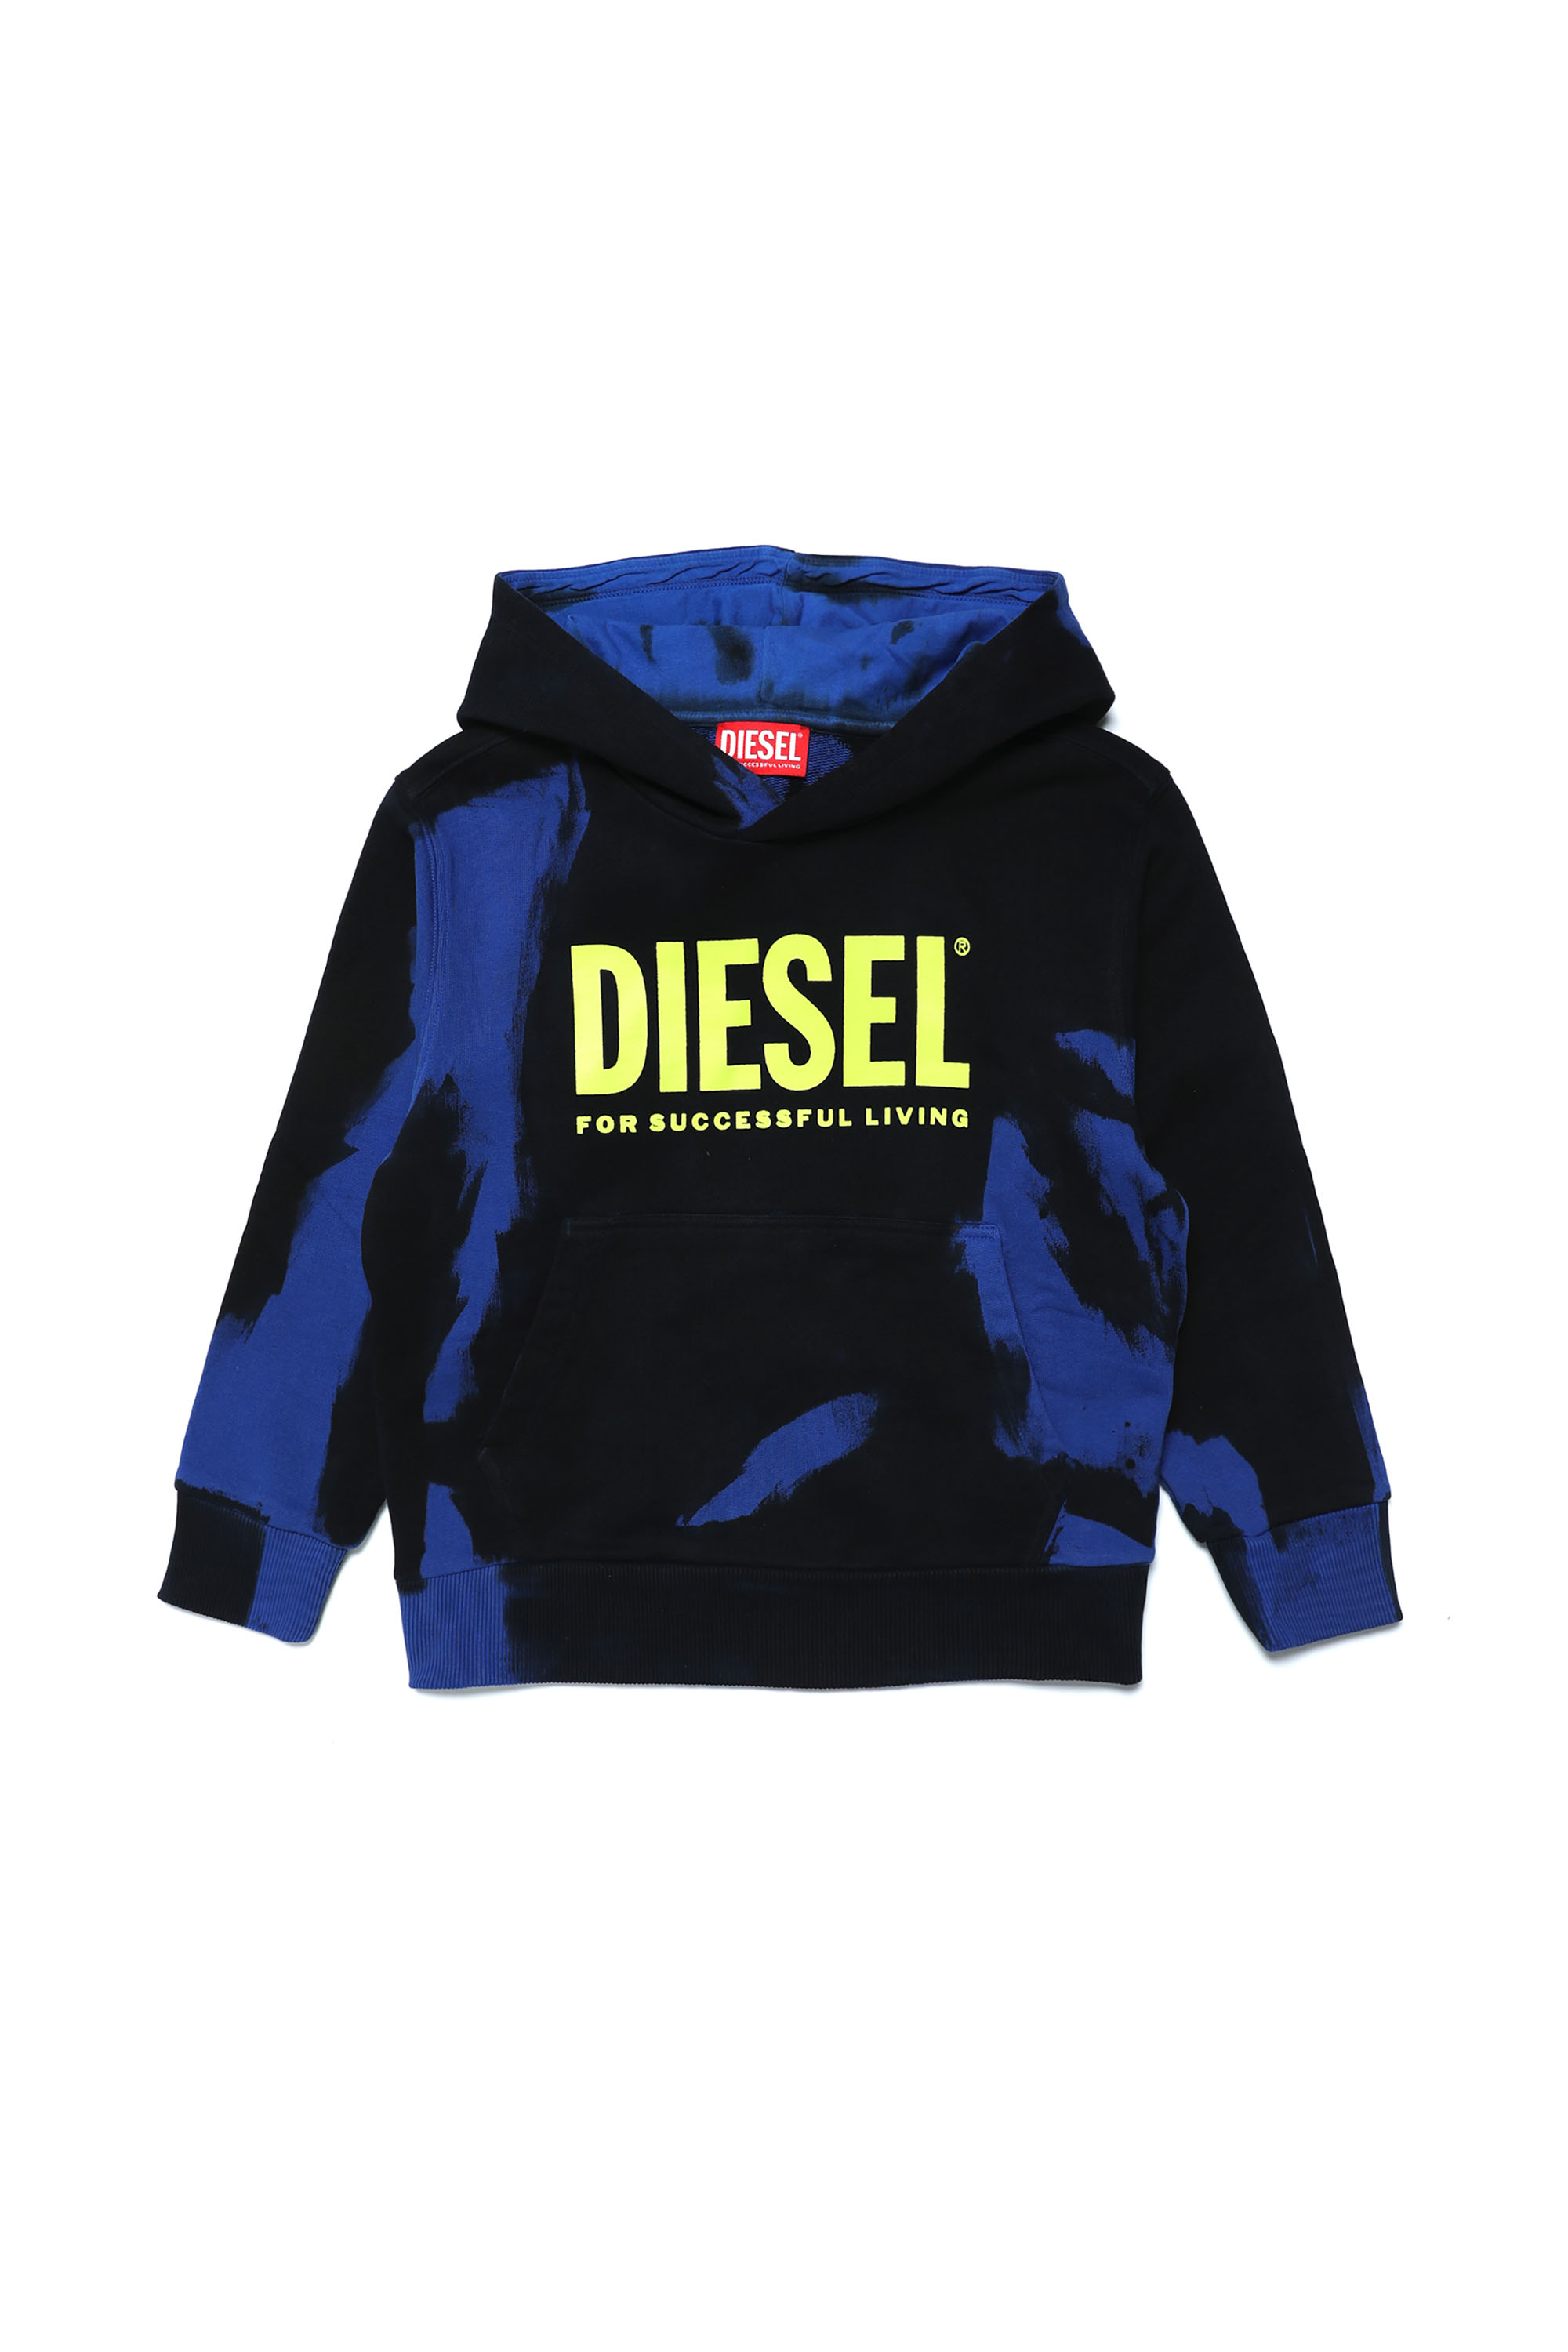 Diesel - SNORK OVER, Black/Blue - Image 1